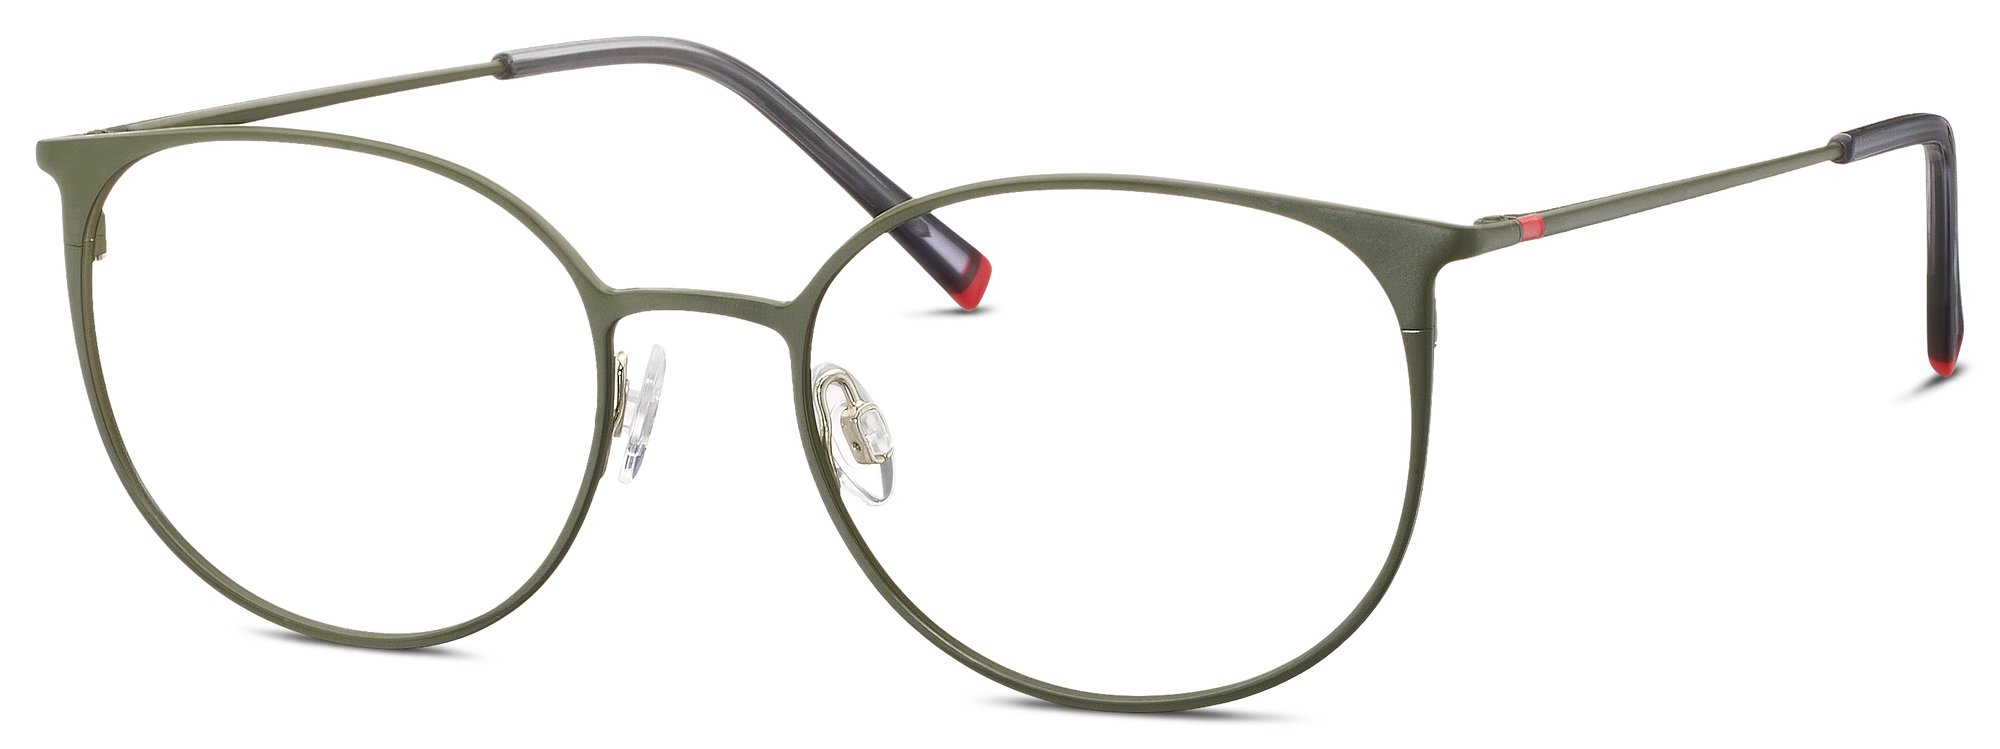 Das Bild zeigt die Korrektionsbrille 582372 40 von der Marke Humphrey‘s in grün.